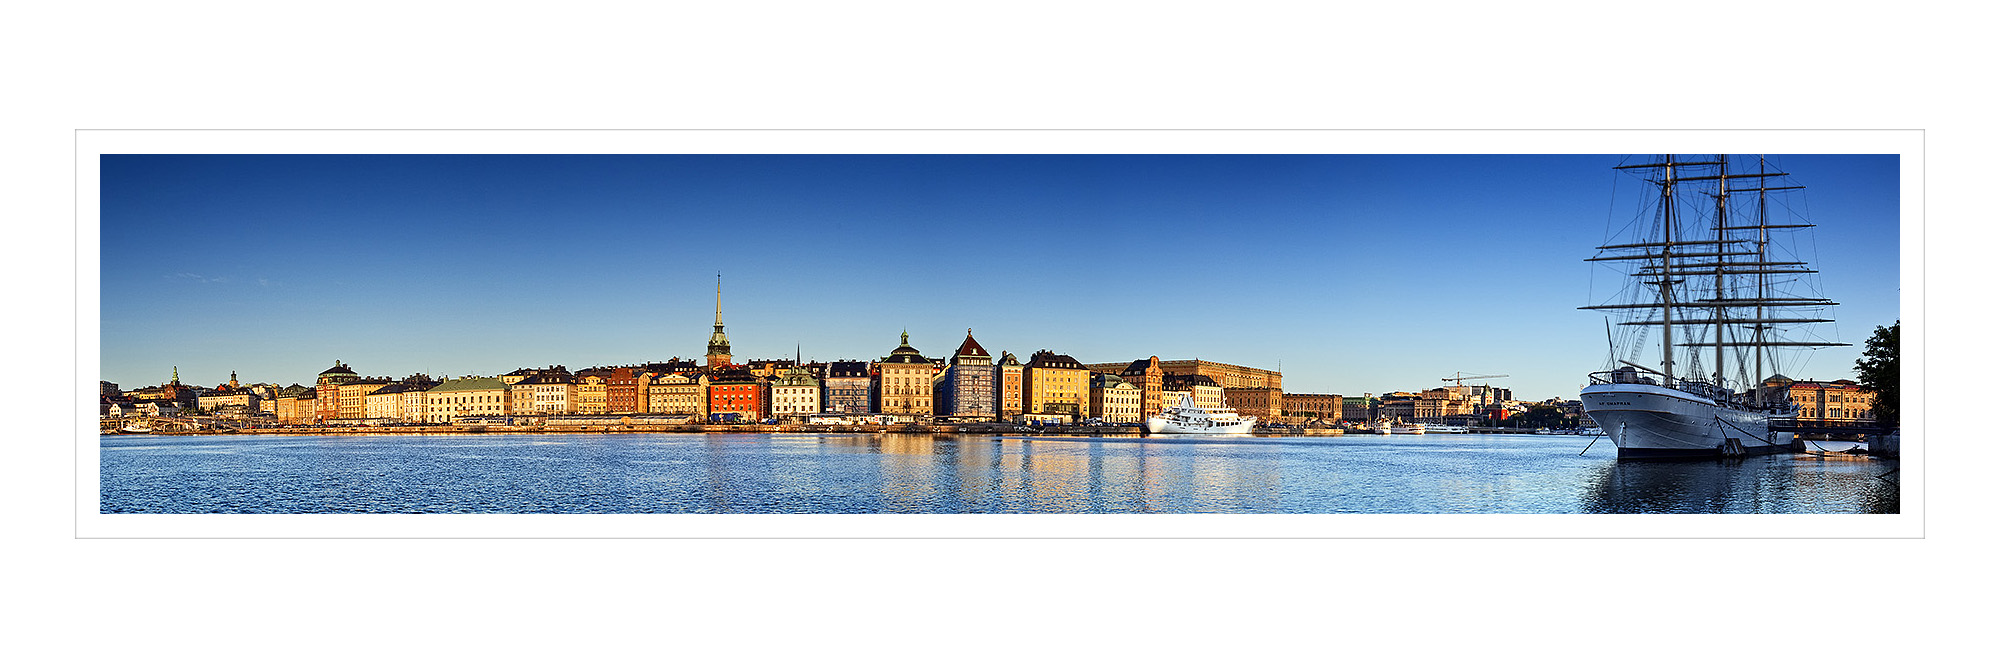 sweden-stockholm-gamla-stan-frame